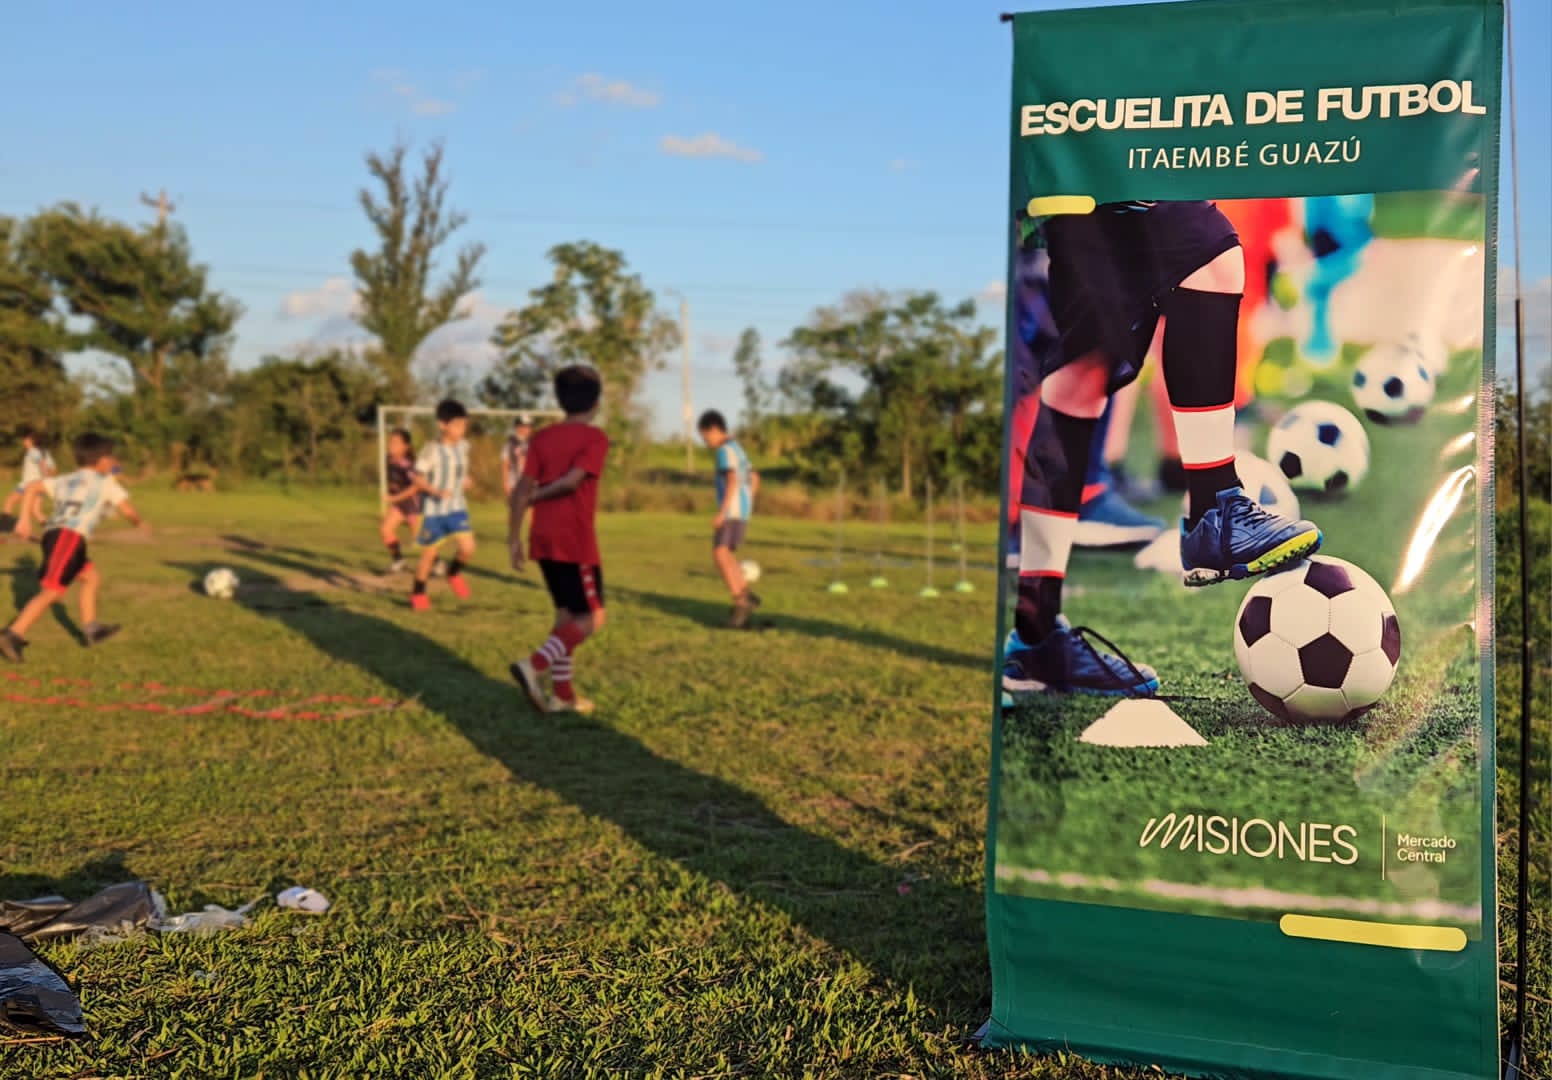 Comunidad de Itaembé Guazú destaca la puesta en funcionamiento de la Escuelita de Fútbol del Mercado Central imagen-30